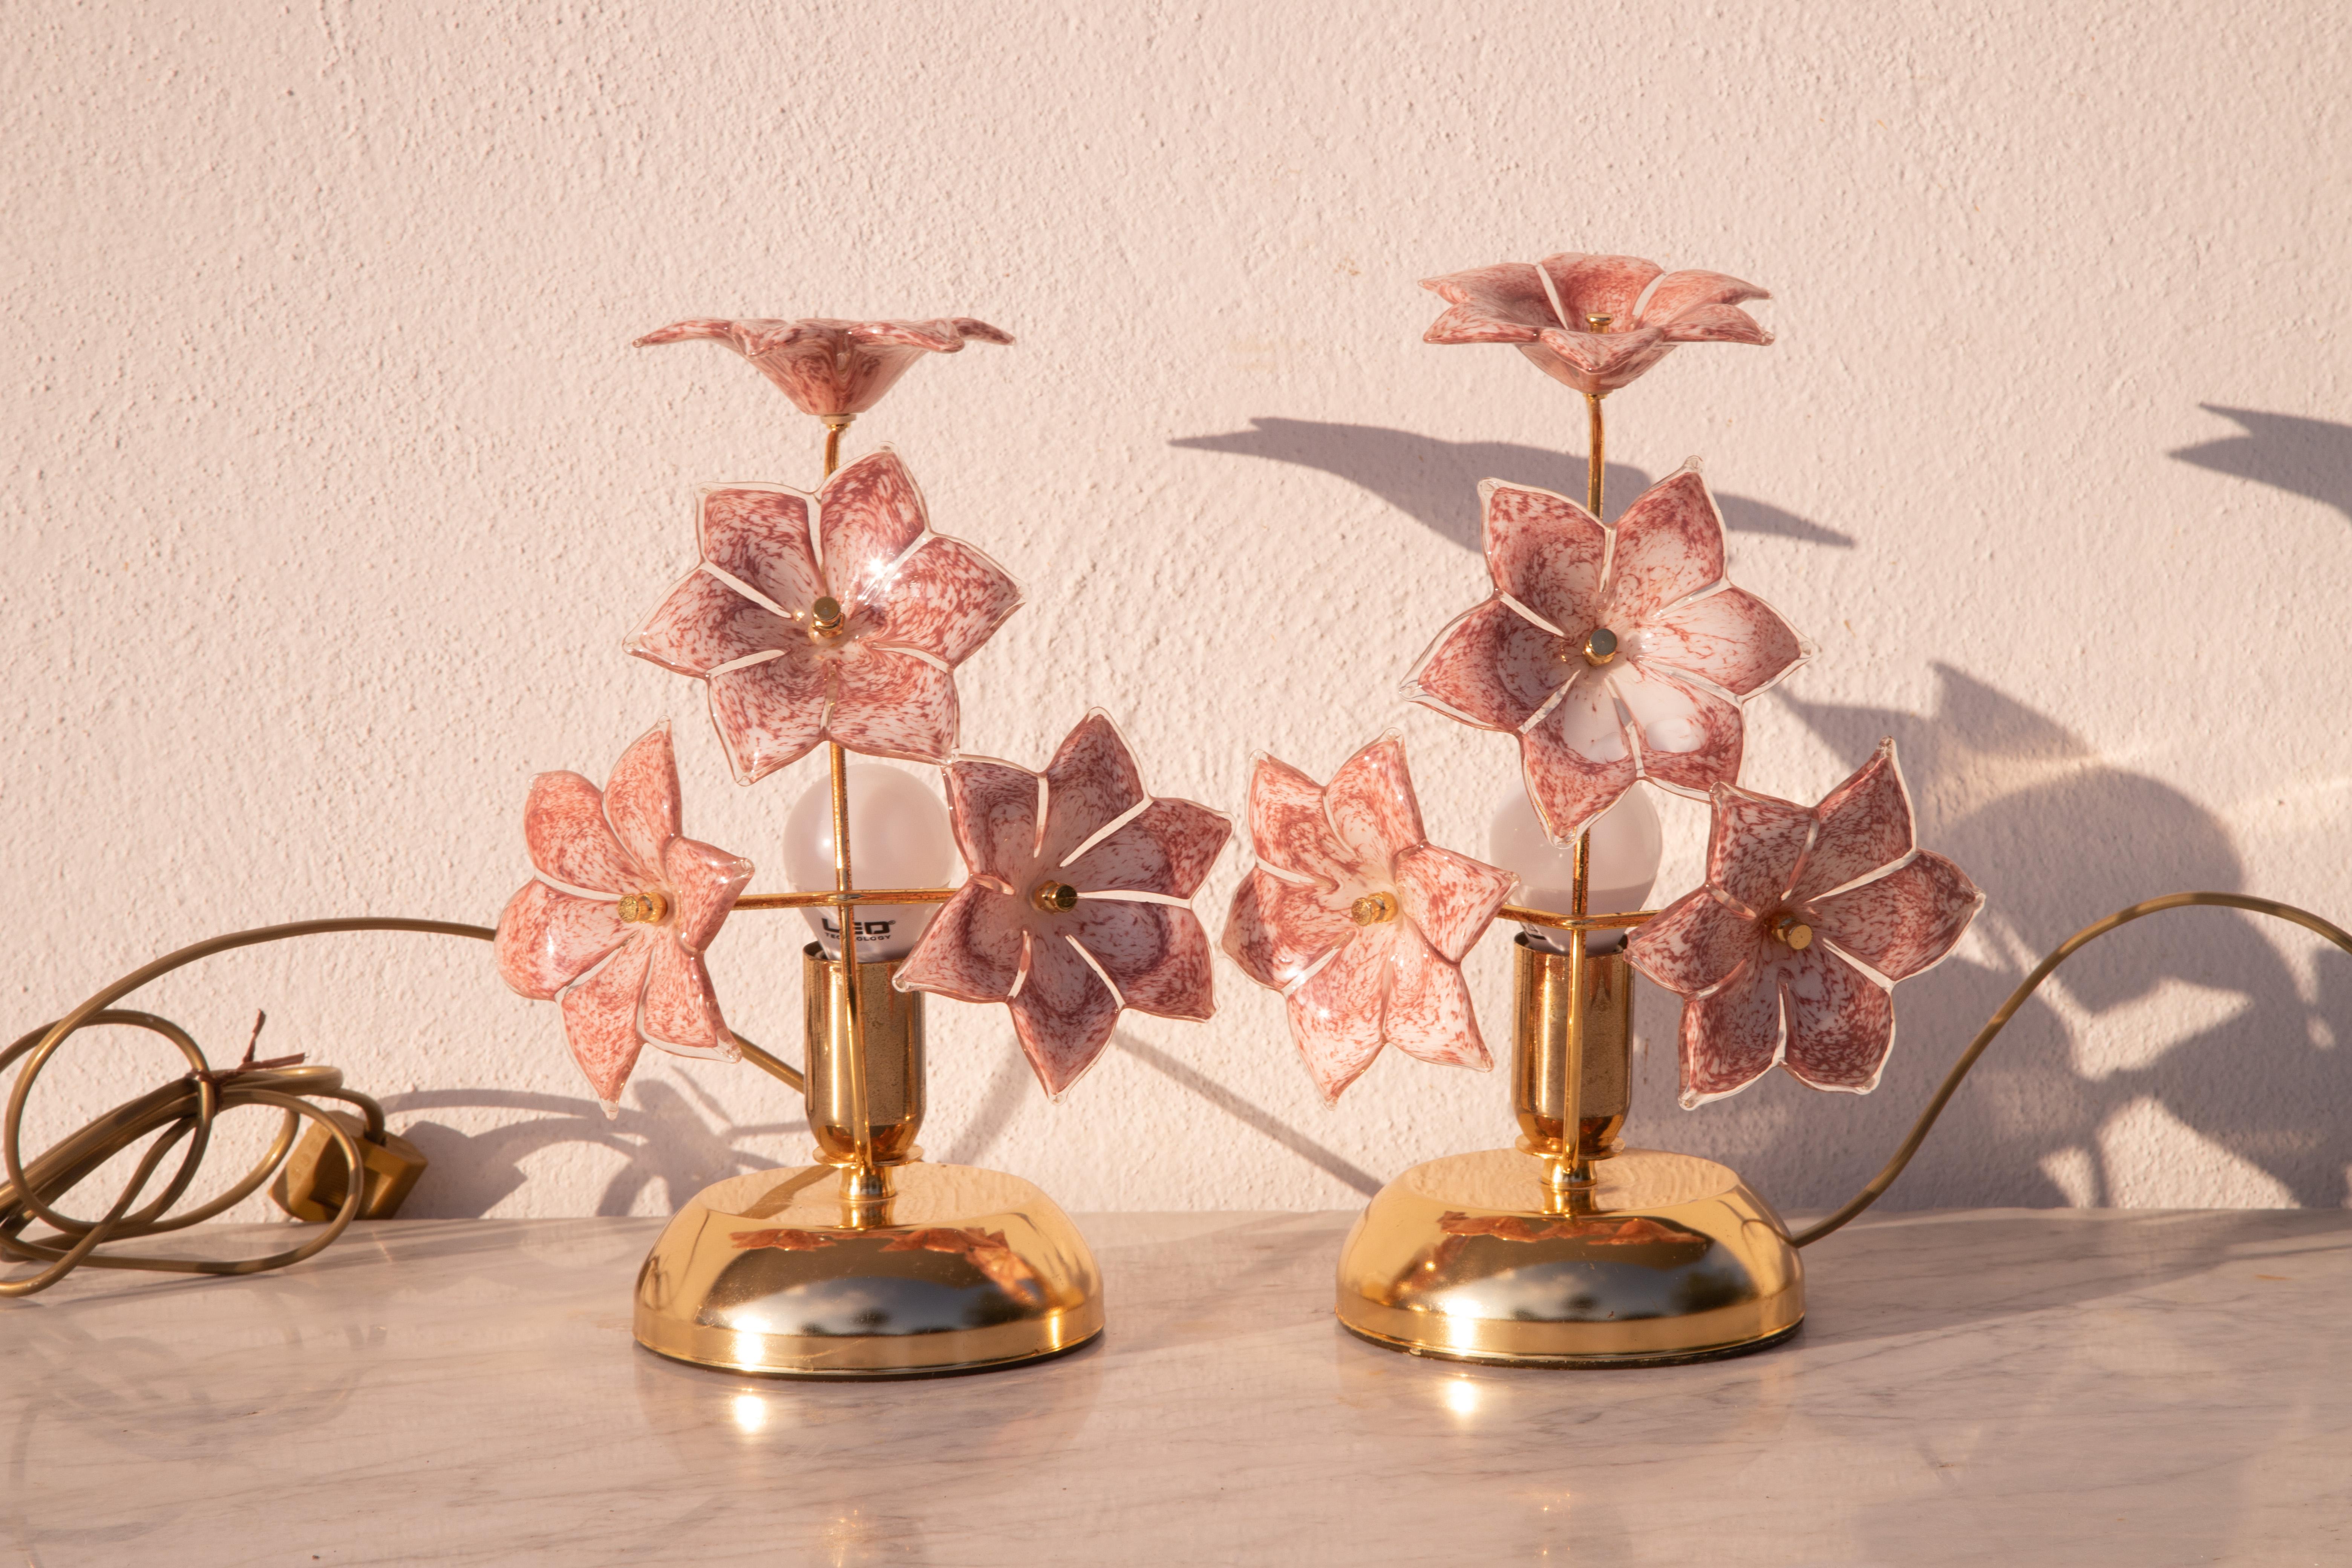 Paar Abatjour-Tischlampen mit rosa Blumen aus Murano-Glas.
Ausgezeichneter Vintage-Zustand
Jede Lampe hat eine e14-Fassung, Möglichkeit der Verkabelung für Usa.
Höhe 30 Zentimeter, Durchmesser 20 Zentimeter.